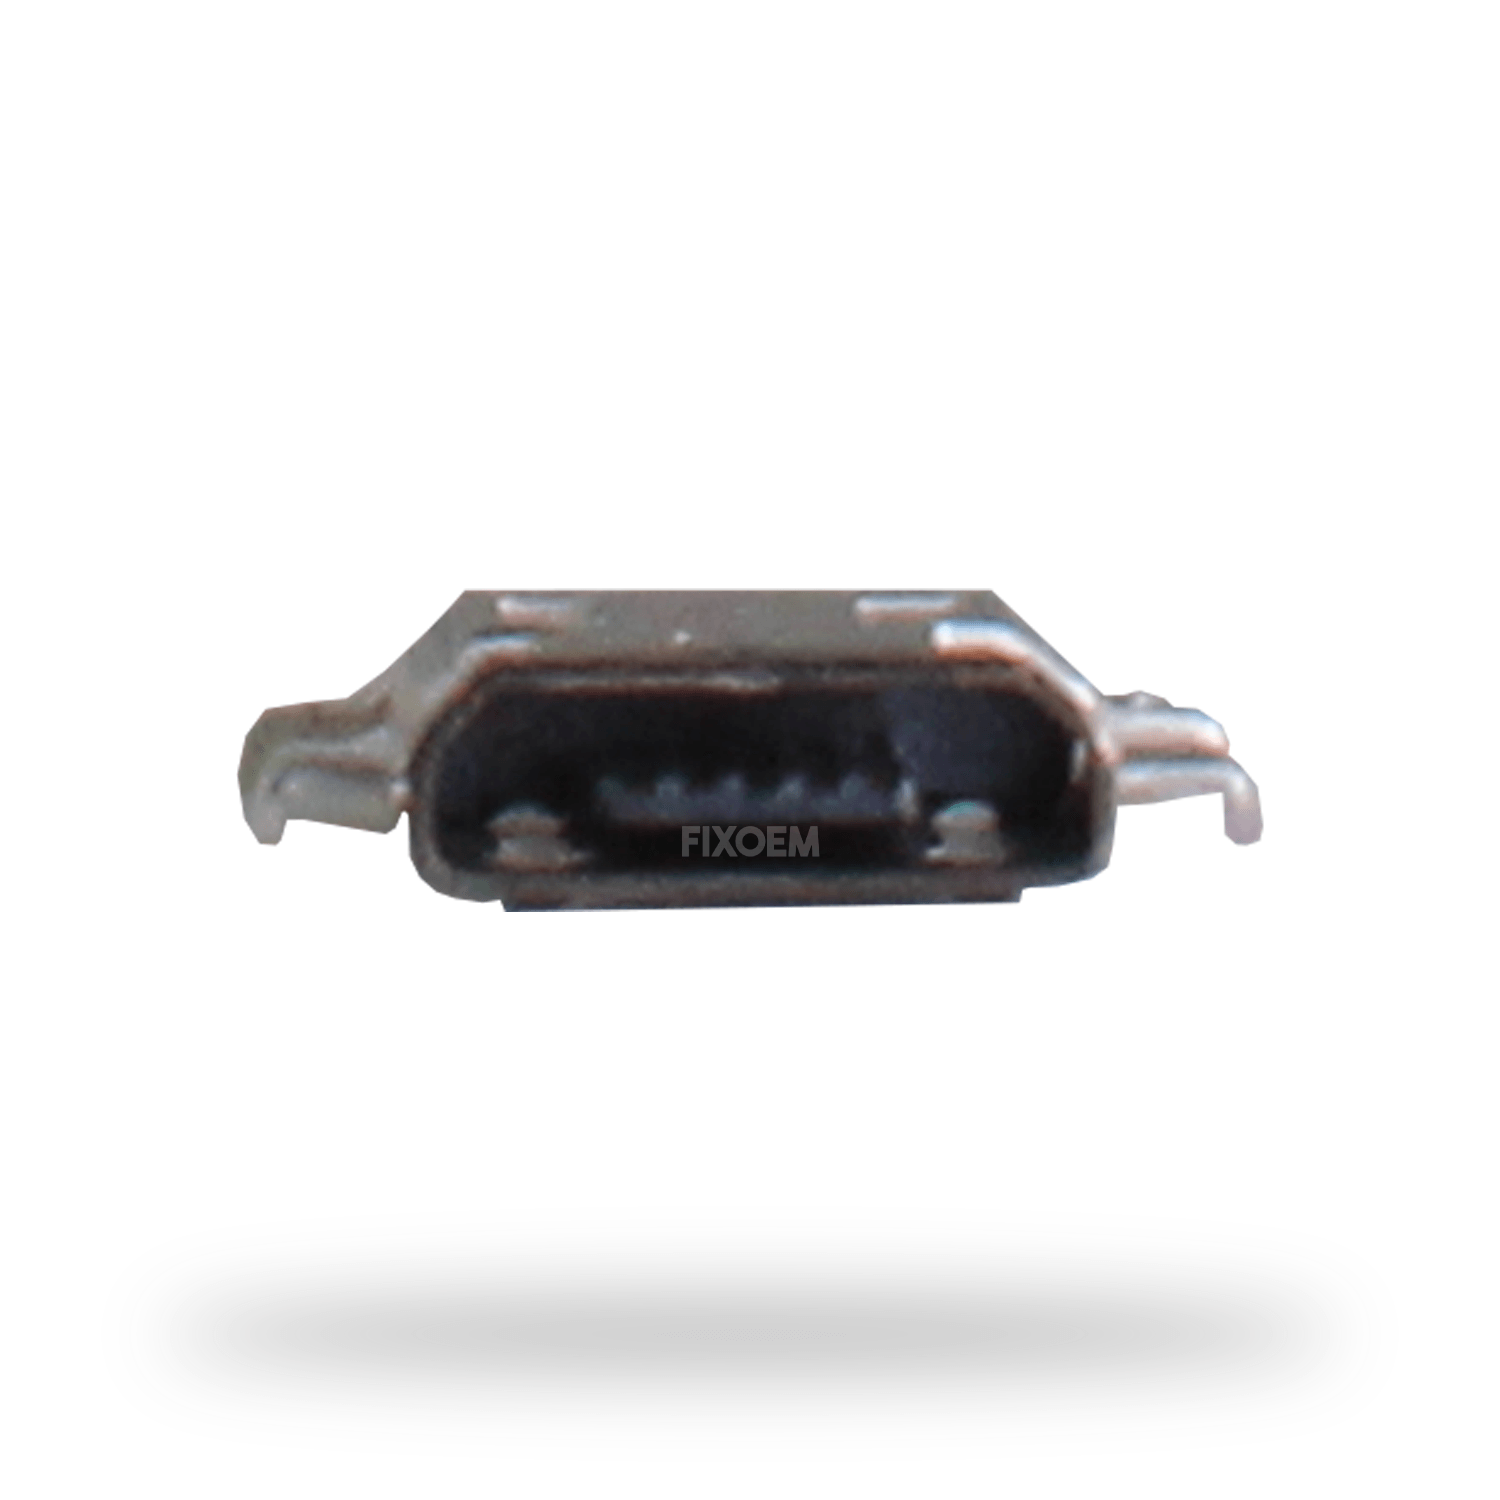 Pin Carga Moto G4 5Pz Xt1601 a solo $ 30.00 Refaccion y puestos celulares, refurbish y microelectronica.- FixOEM